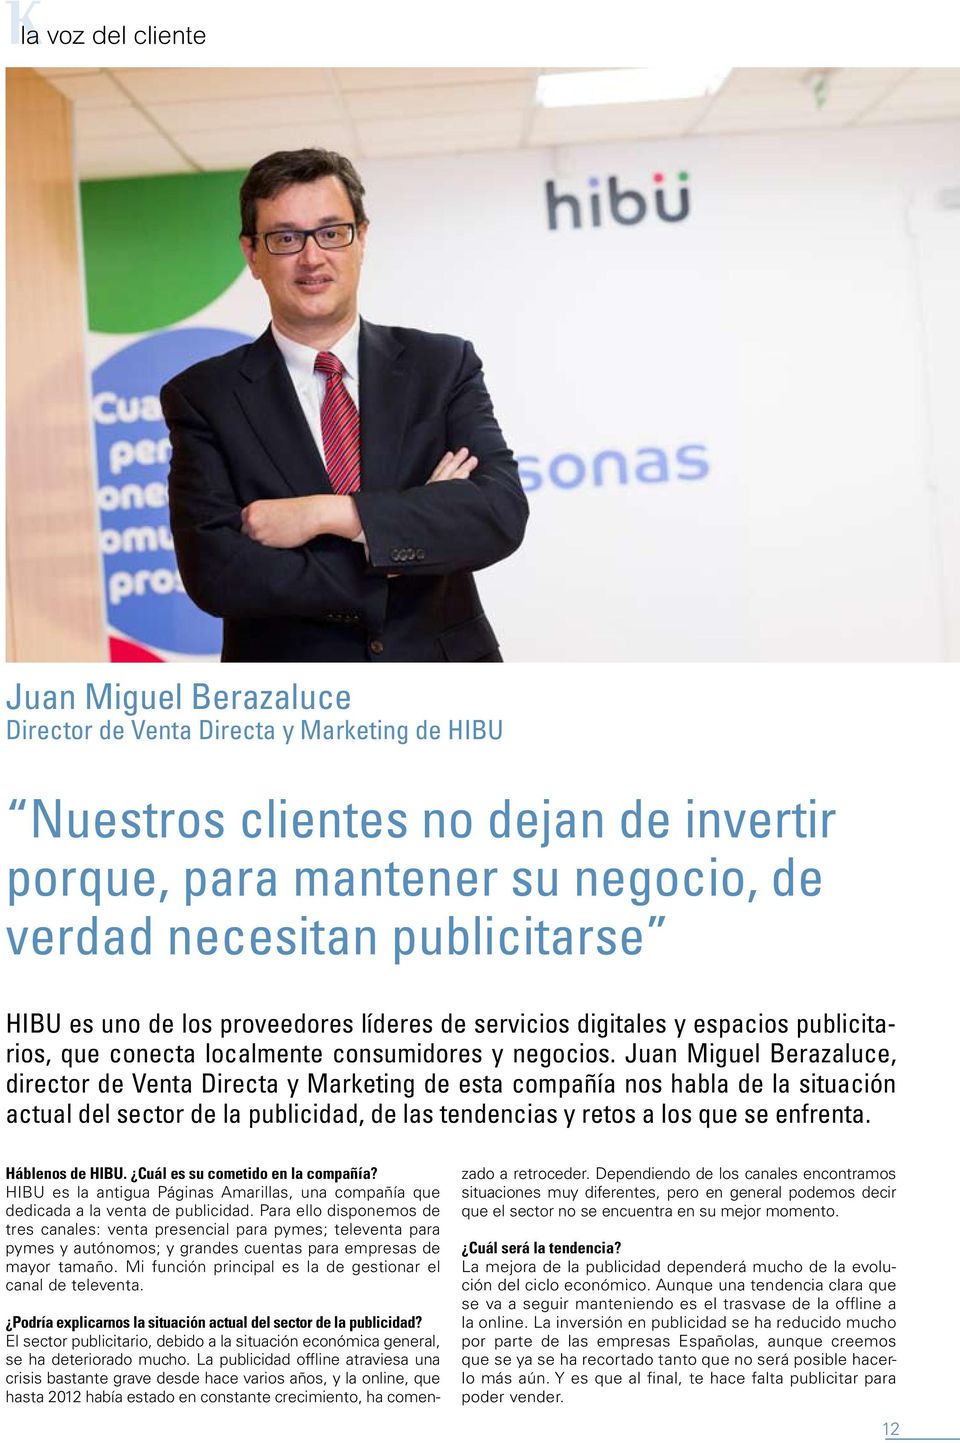 Juan Miguel Berazaluce, director de Venta Directa y Marketing de esta compañía nos habla de la situación actual del sector de la publicidad, de las tendencias y retos a los que se enfrenta.